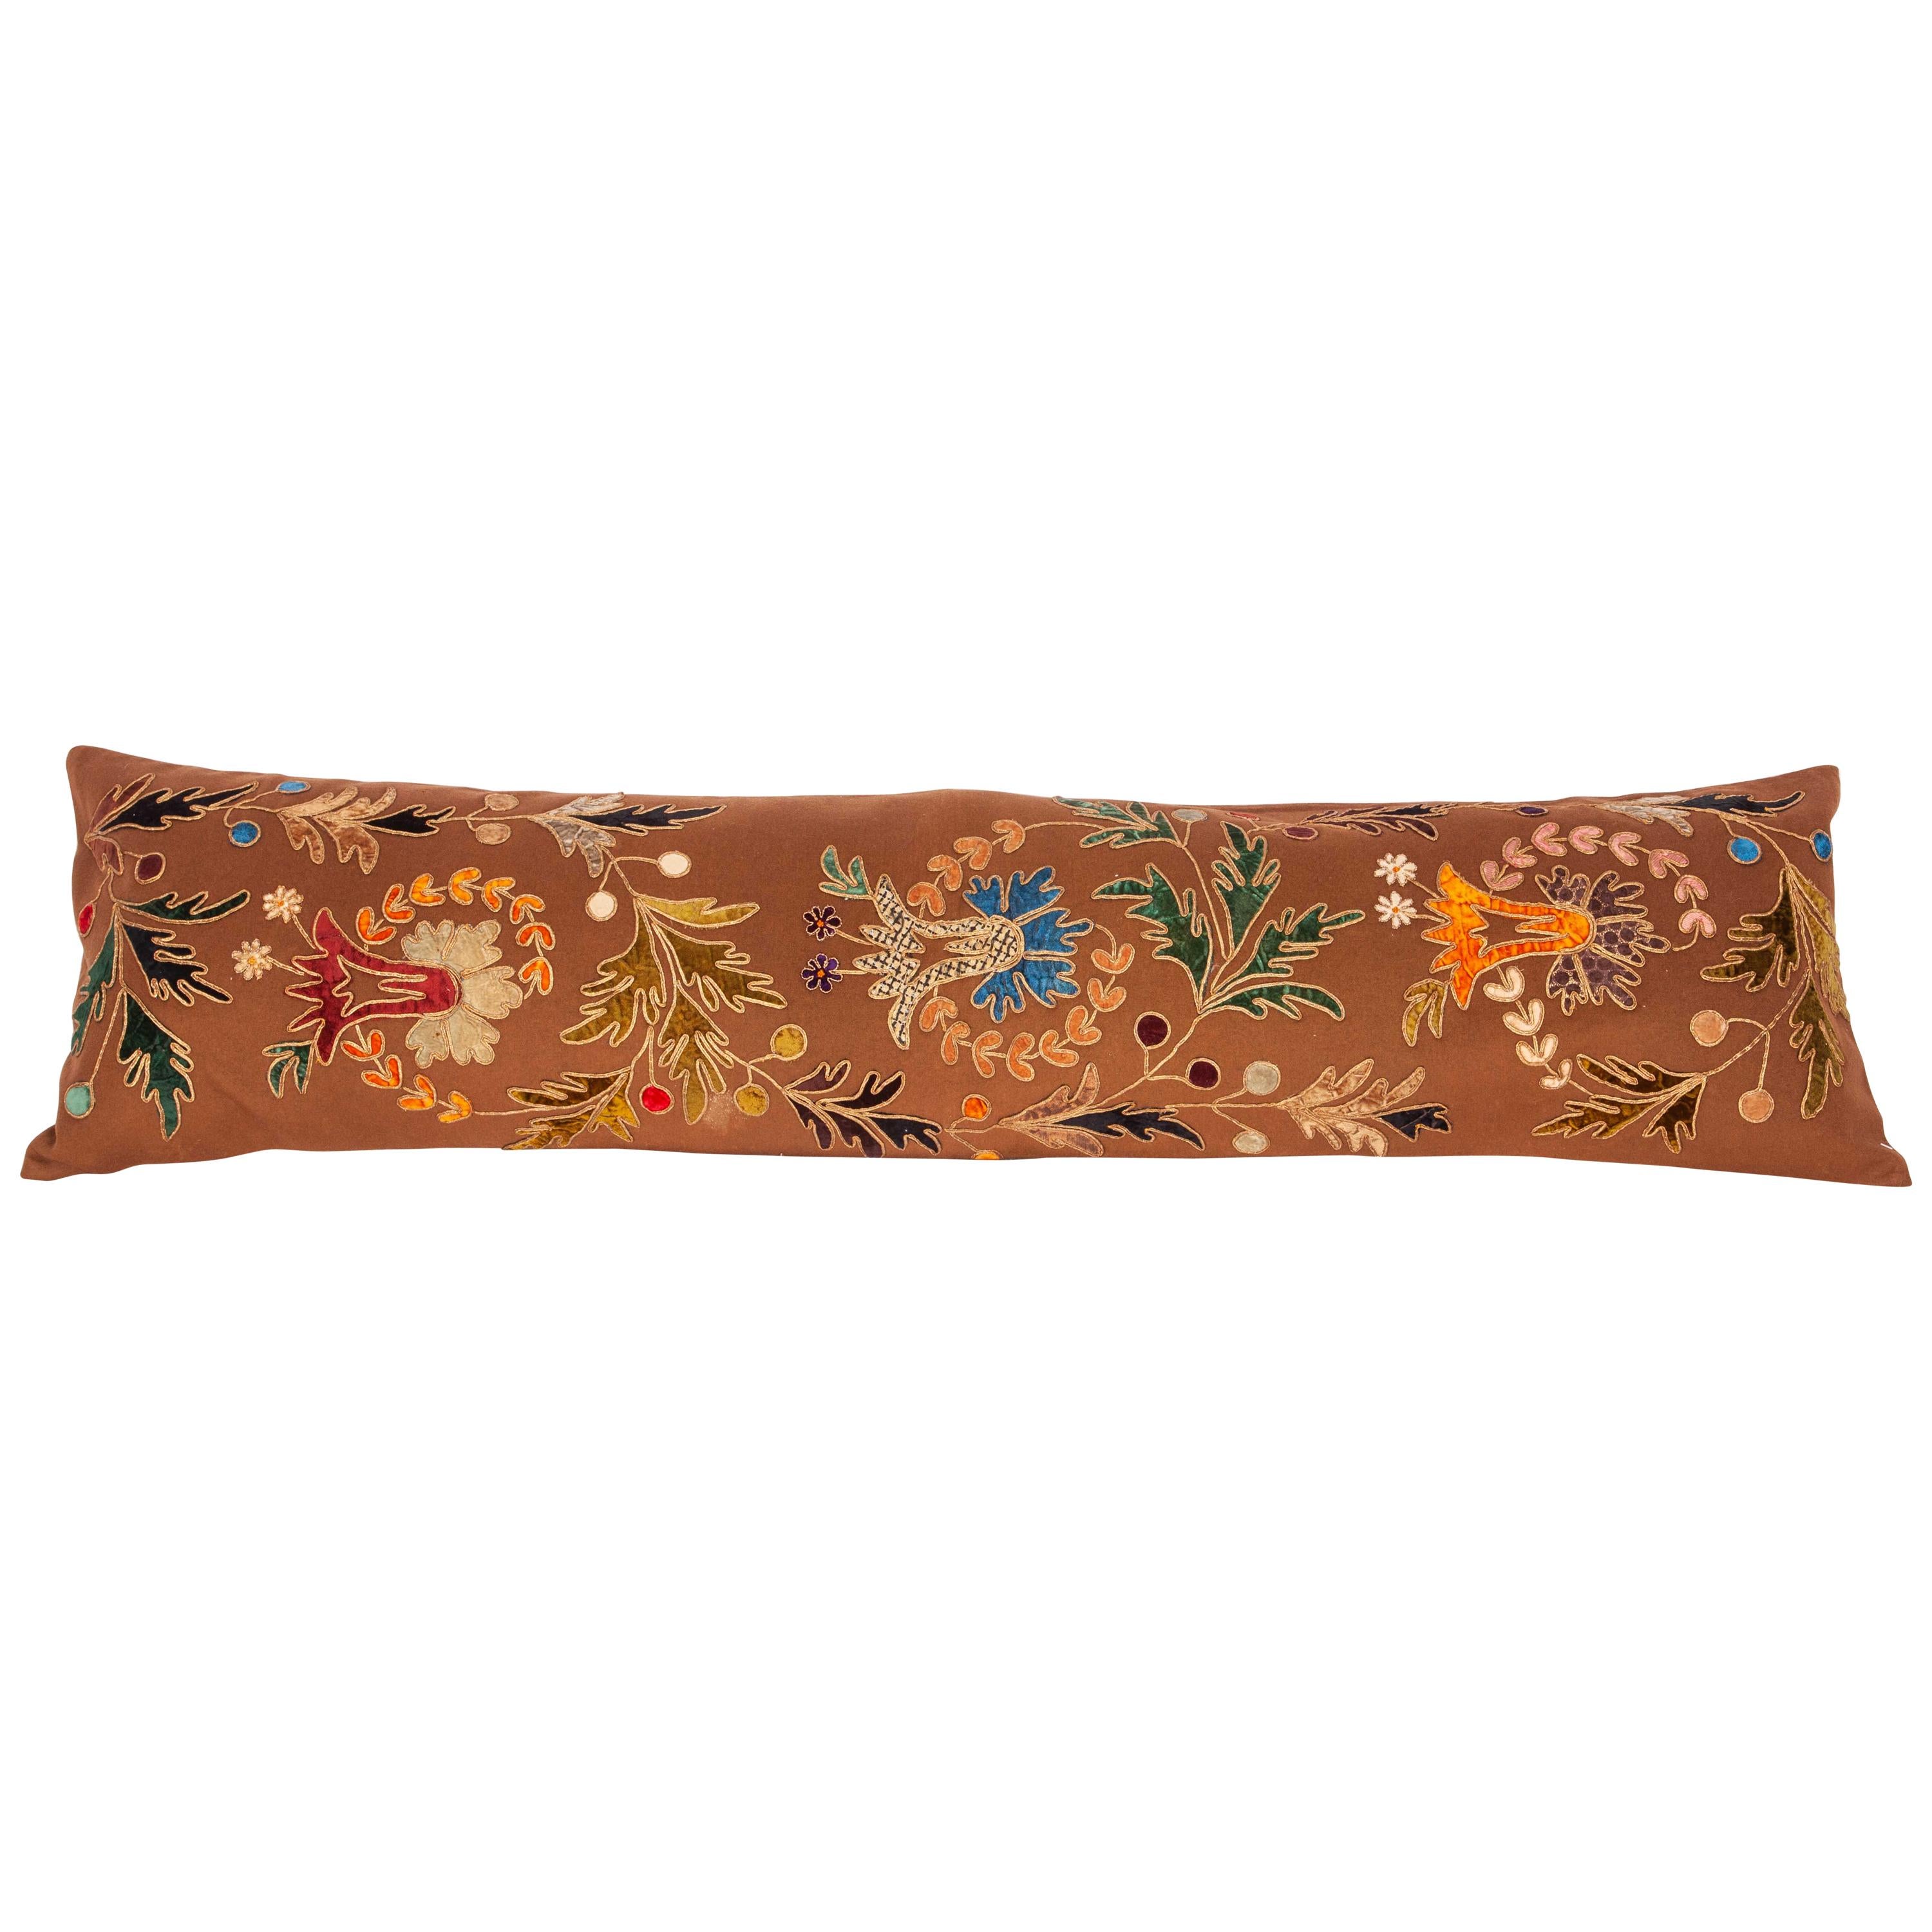 Appliqué Long Pillow Case Made from a 19th Century European Applique Panel